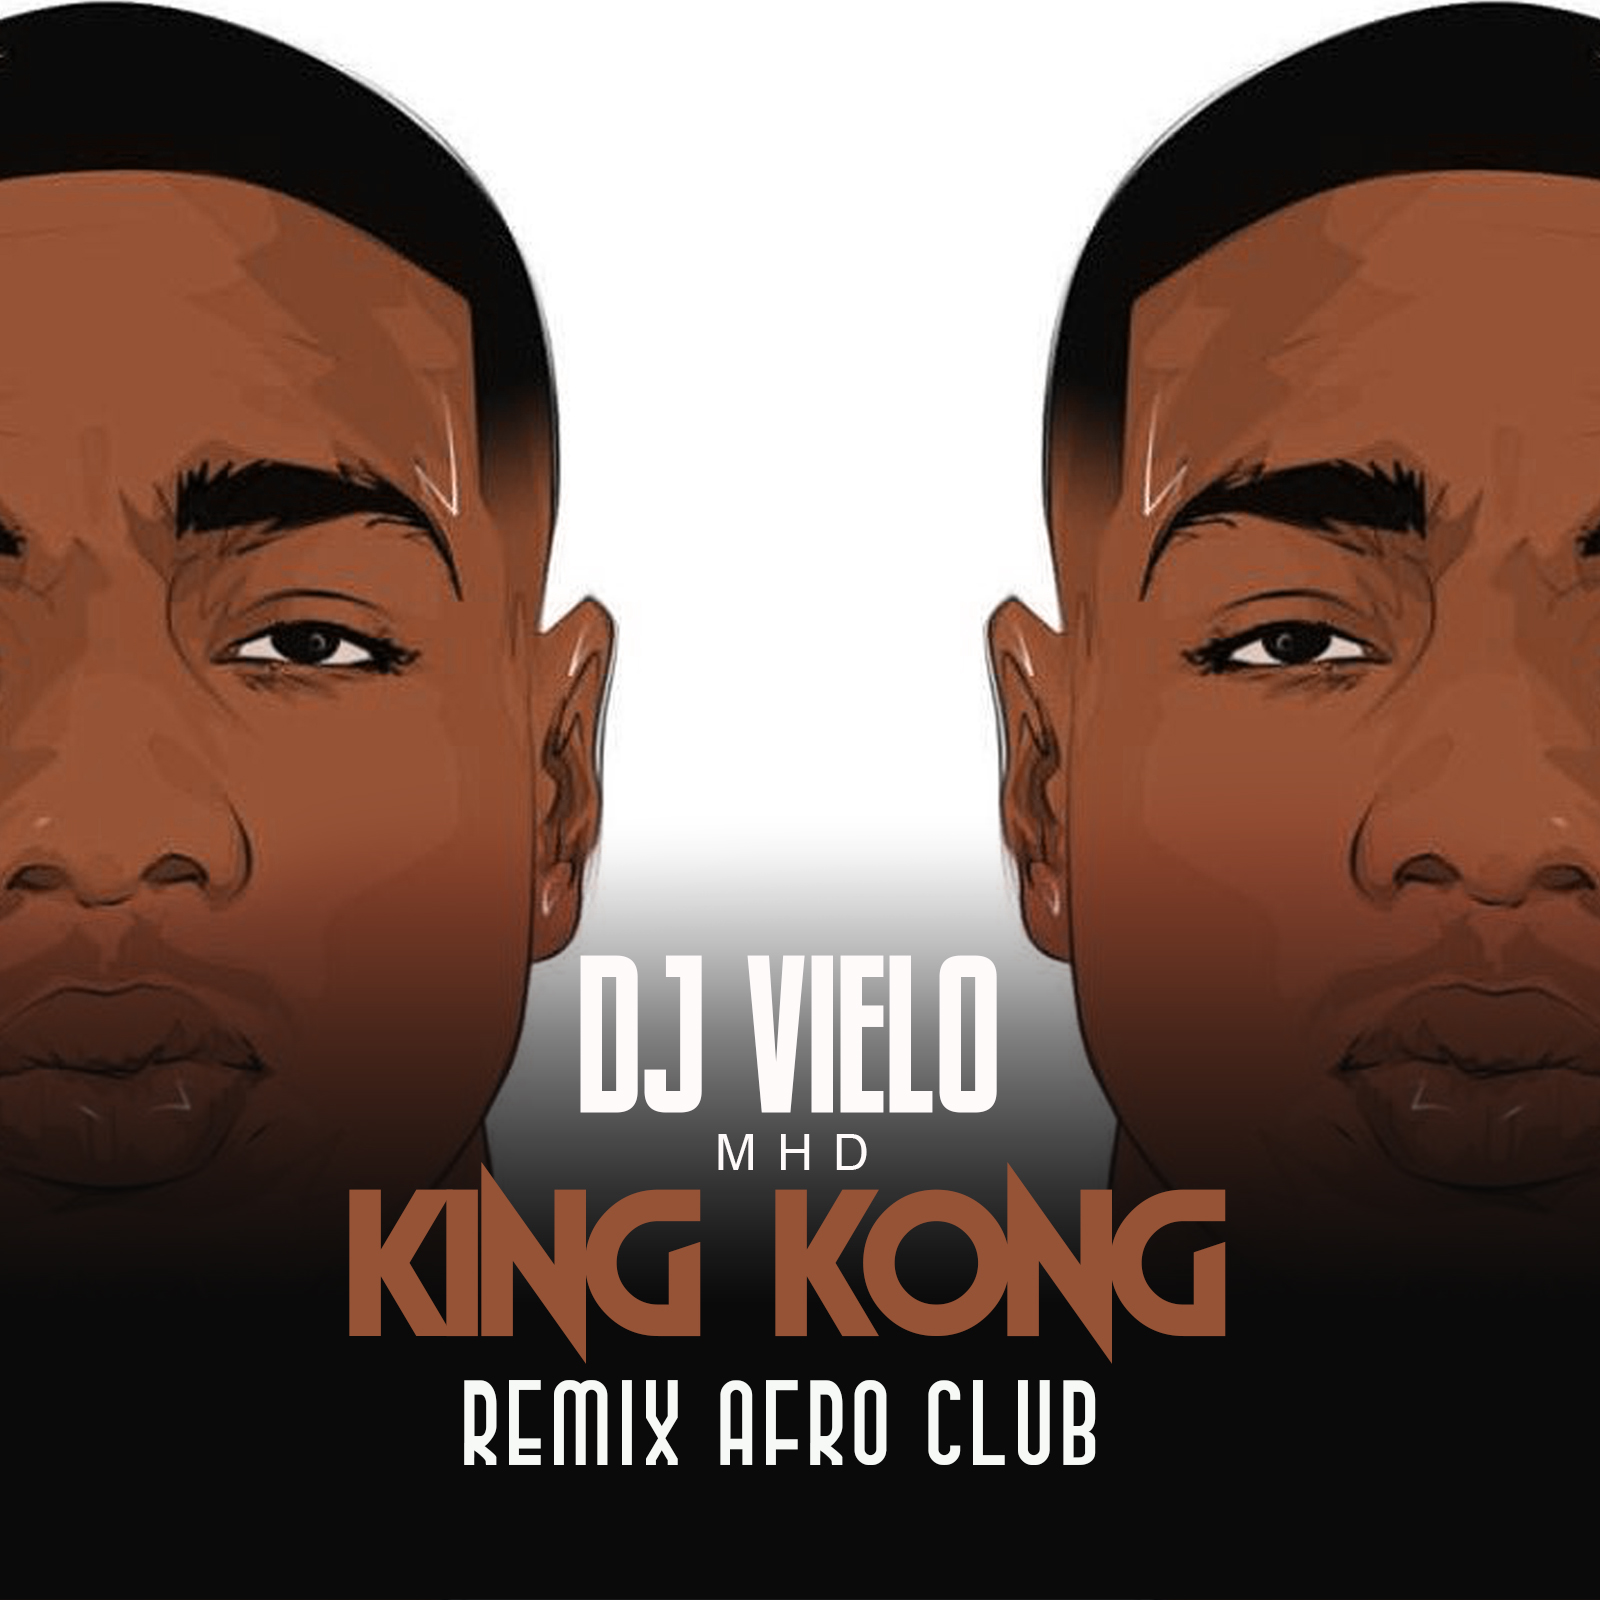 Κατεβάστε Dj Vielo X MHD - AFRO TRAP Part.11 (King Kong) Remix Afro Club DISPO SUR SPOTIFY, DEEZER, ITUNES